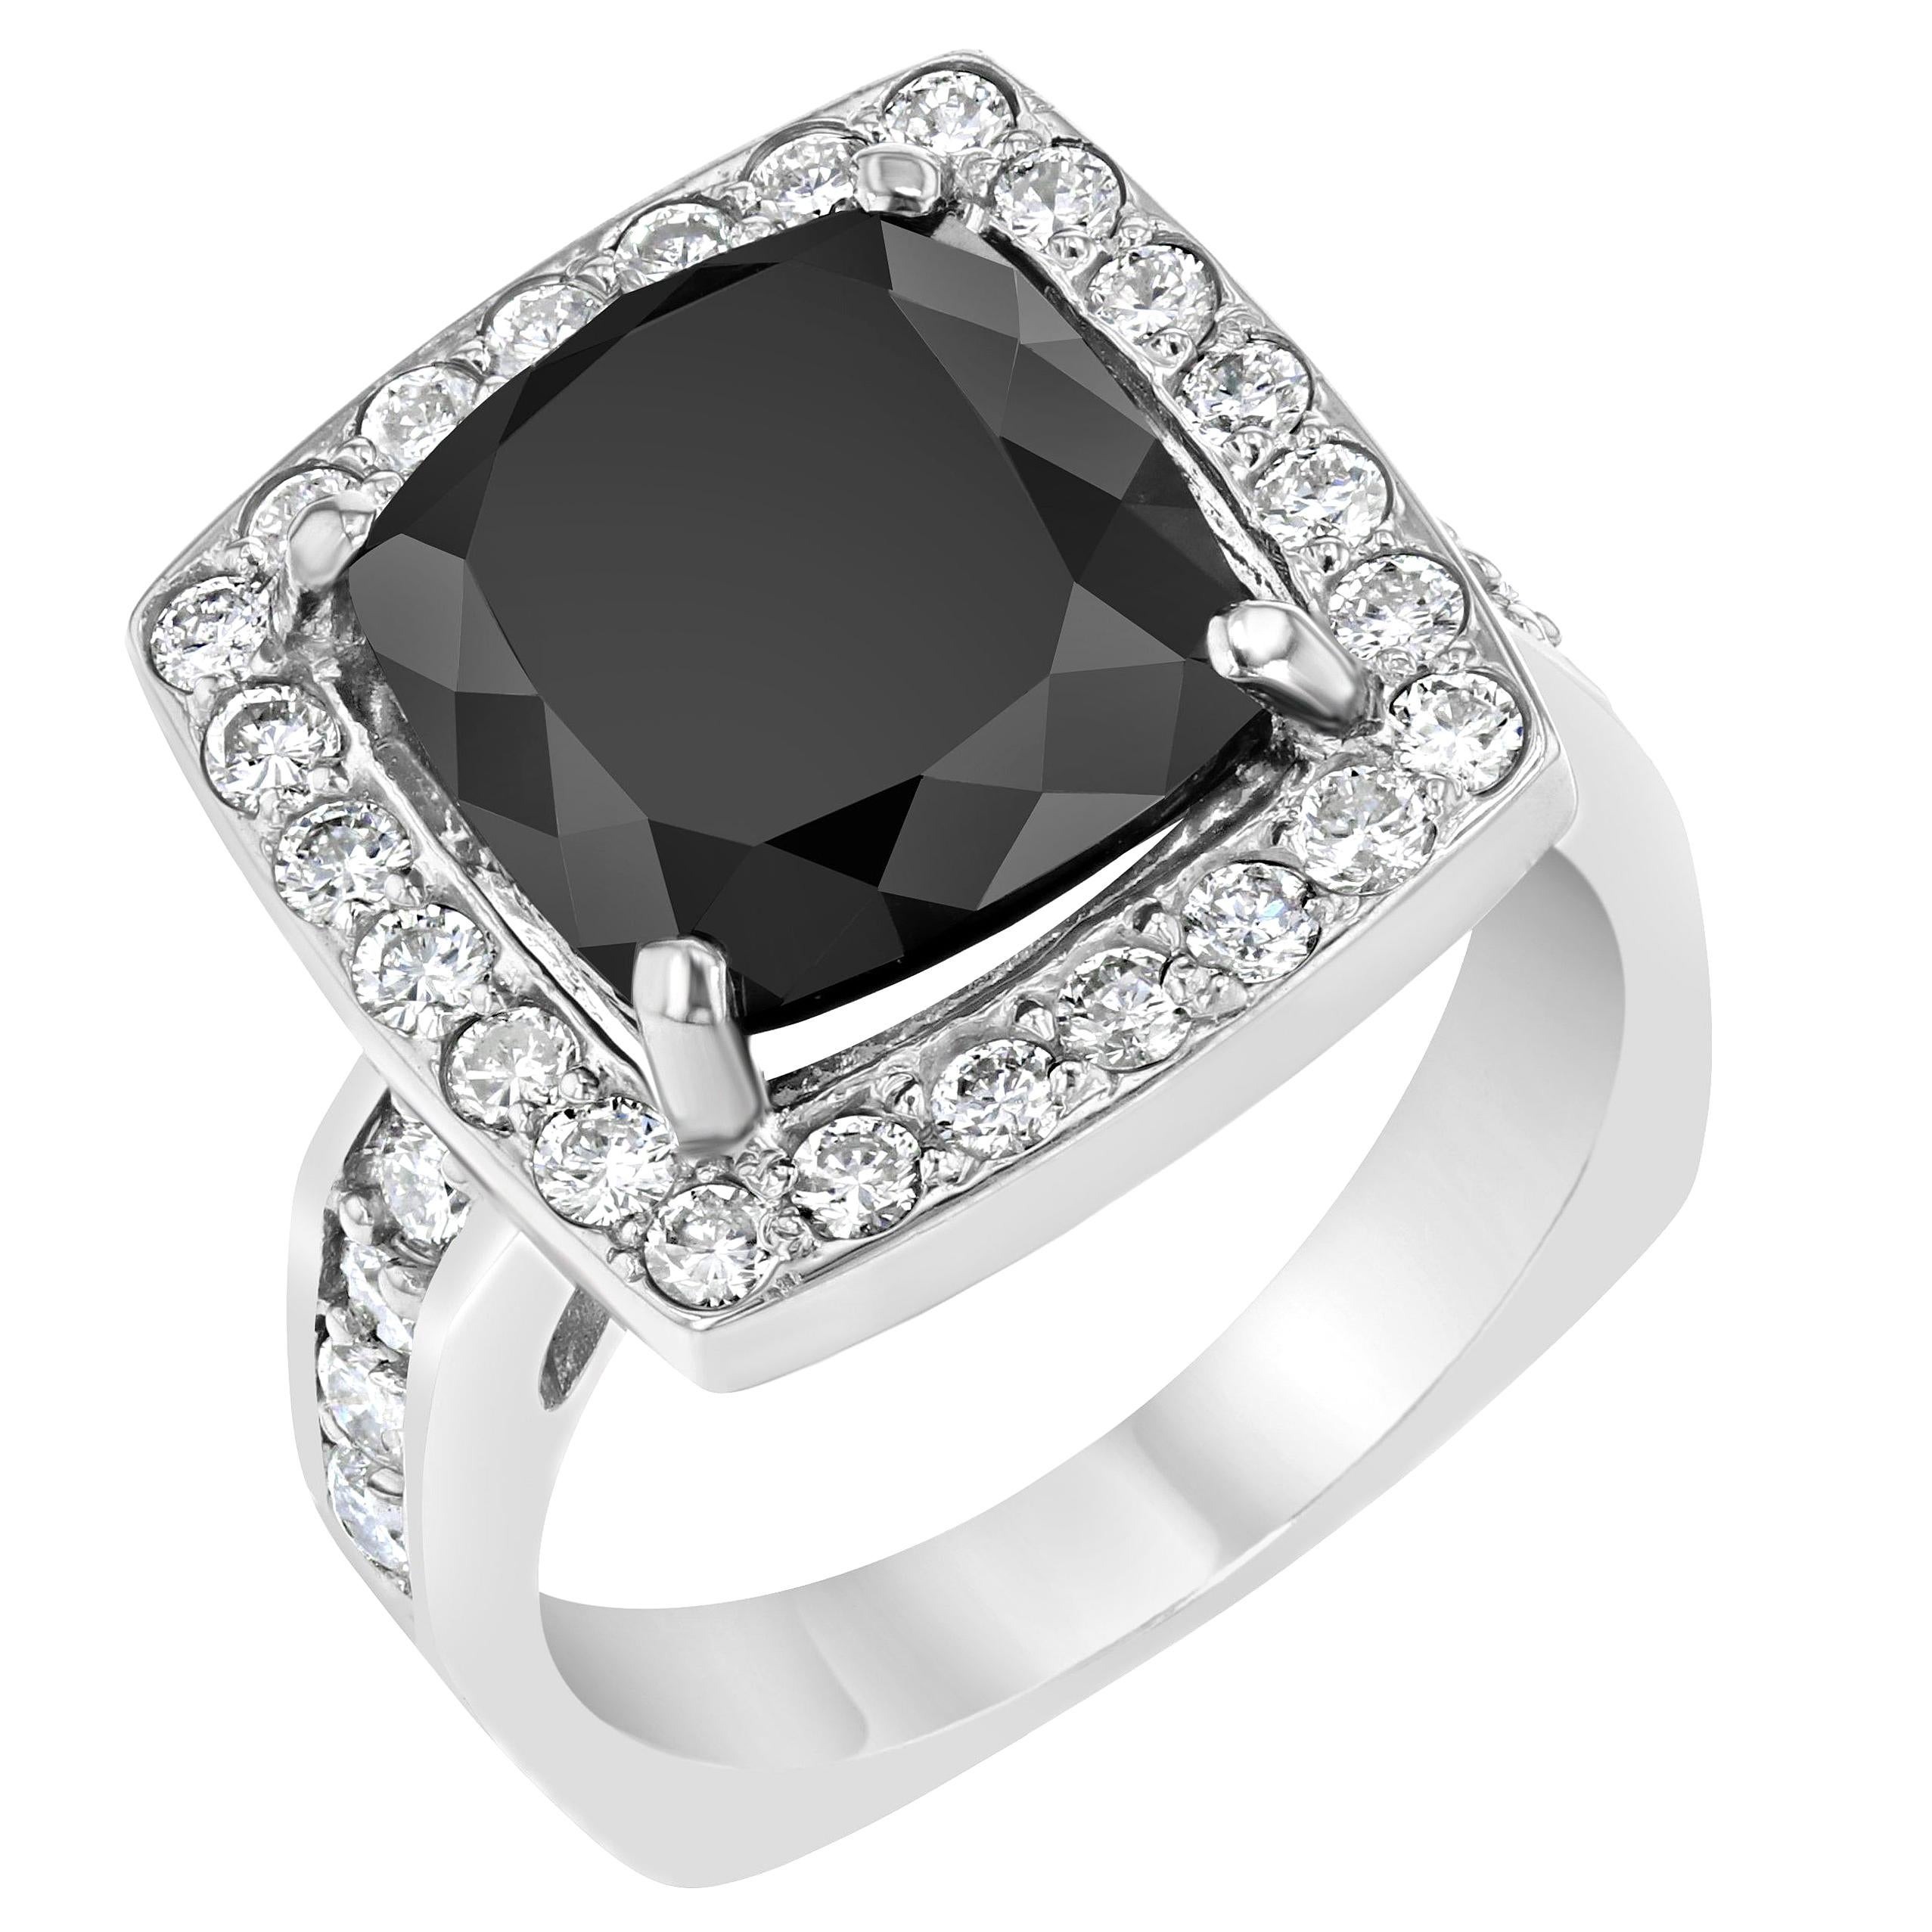 8.44 Carat Square Cut Black Diamond White Gold Ring